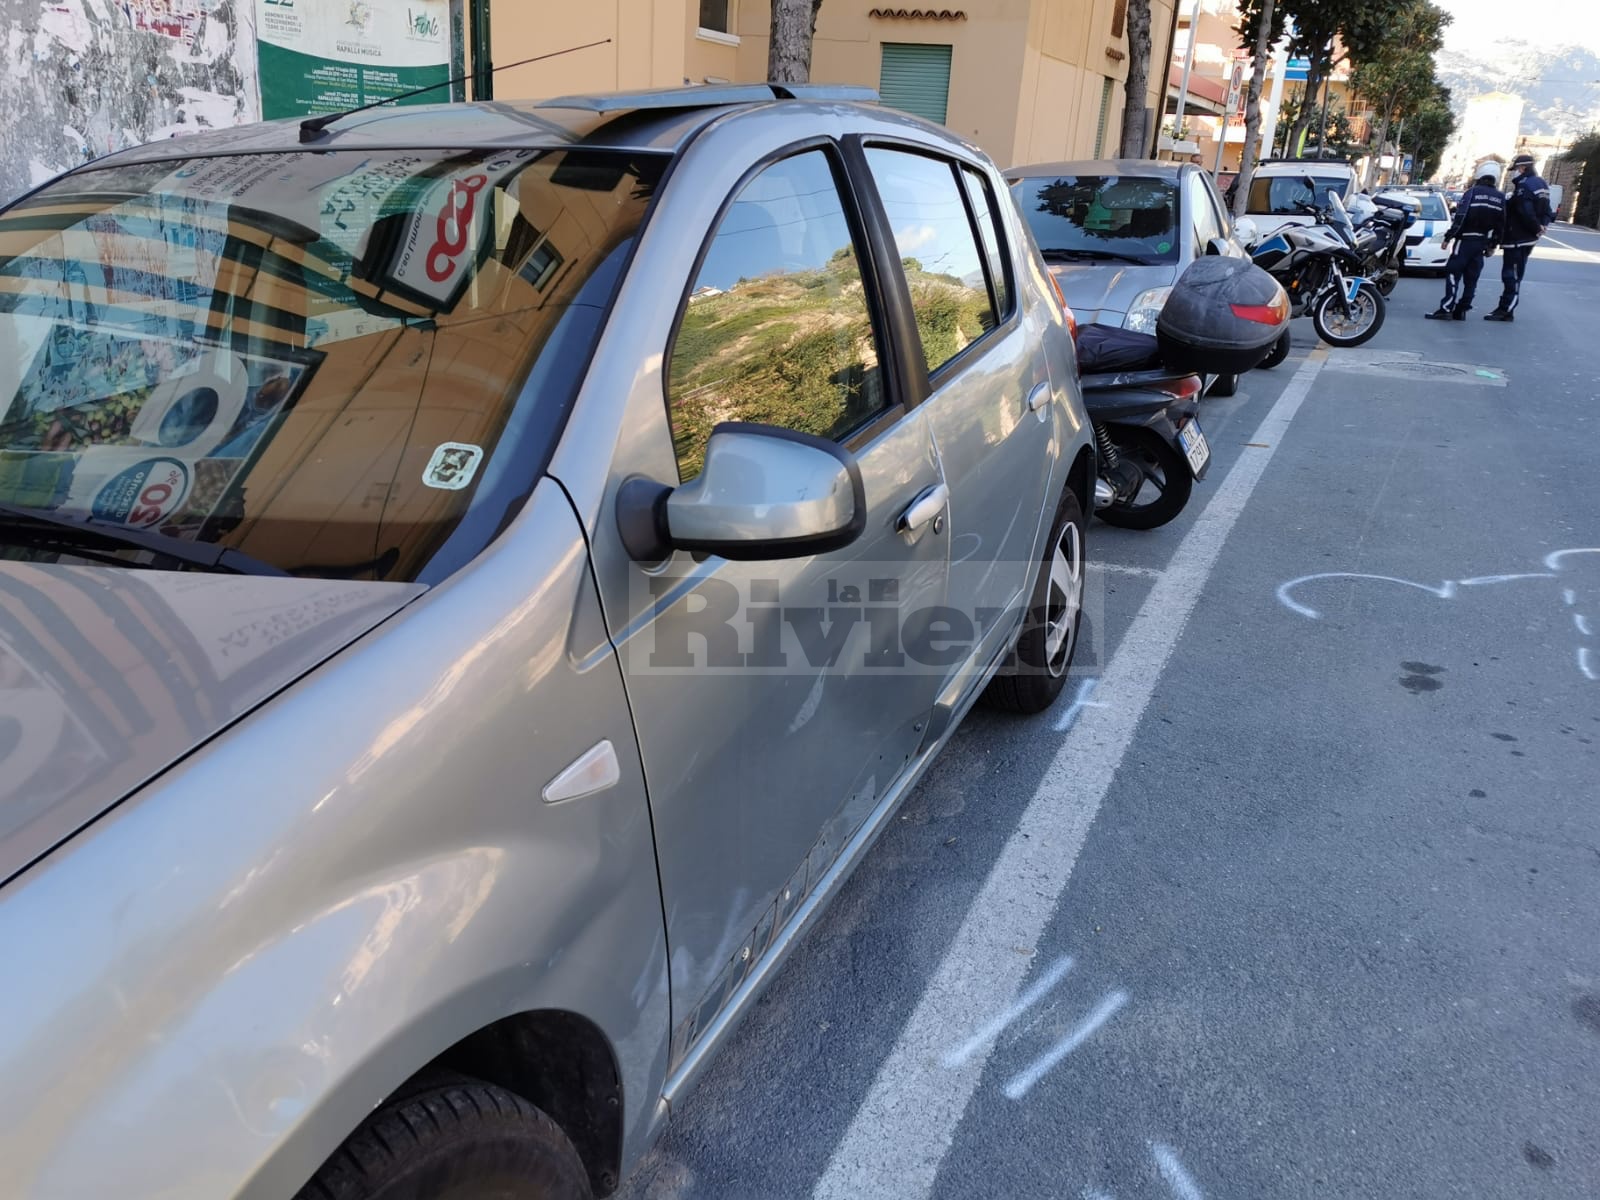 Incidente via Cabagni baccini Ventimiglia_02